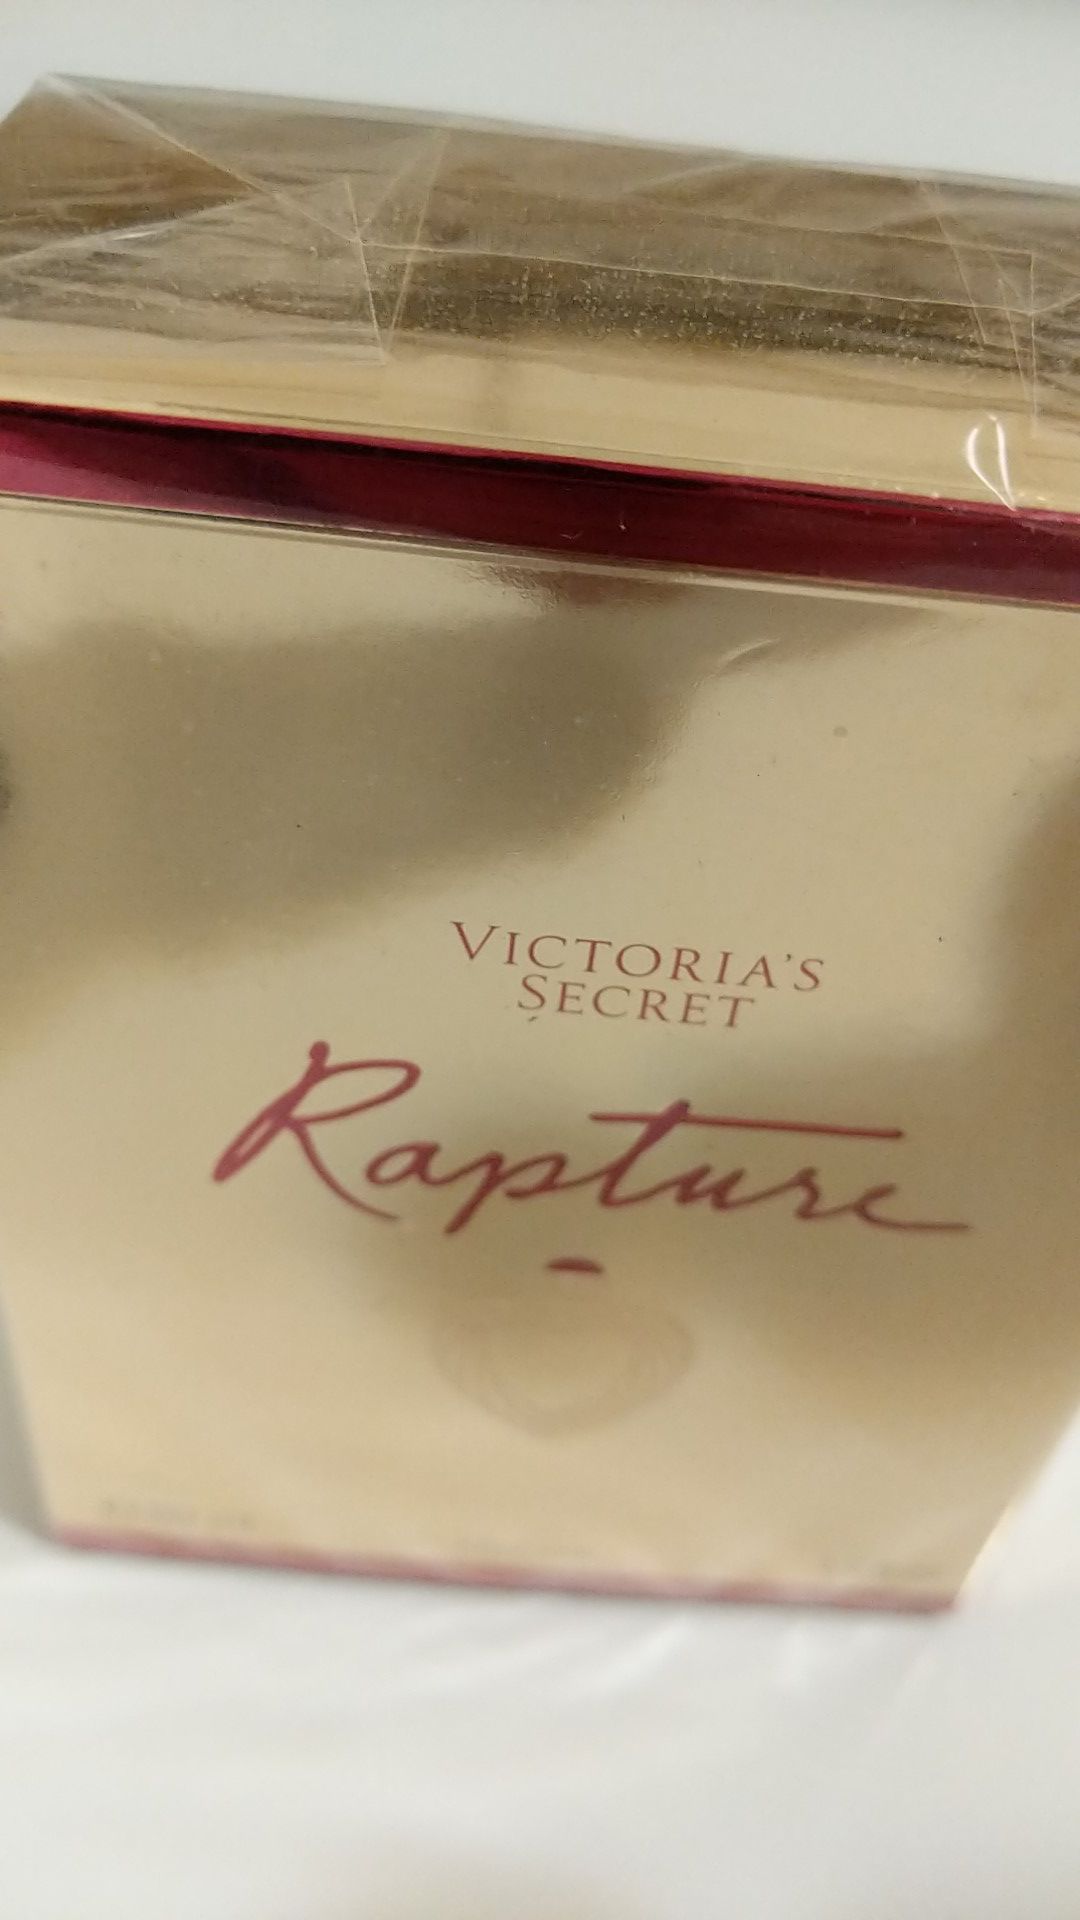 Victoria's Secret, Rapture Cologne Eau Dr Perfume